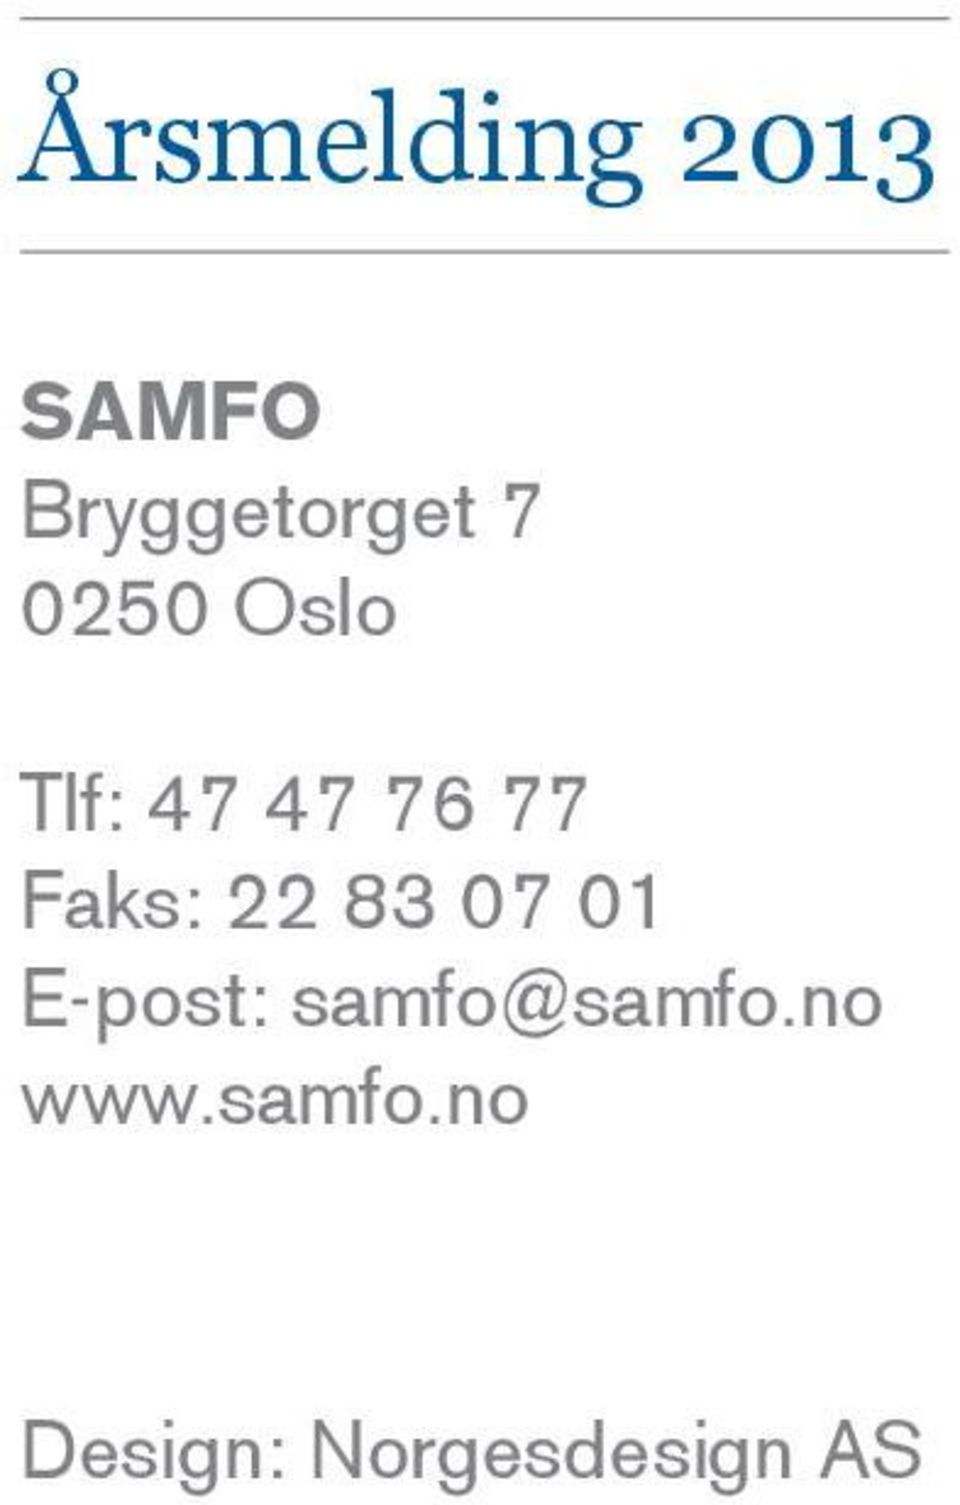 E-post: samfo@